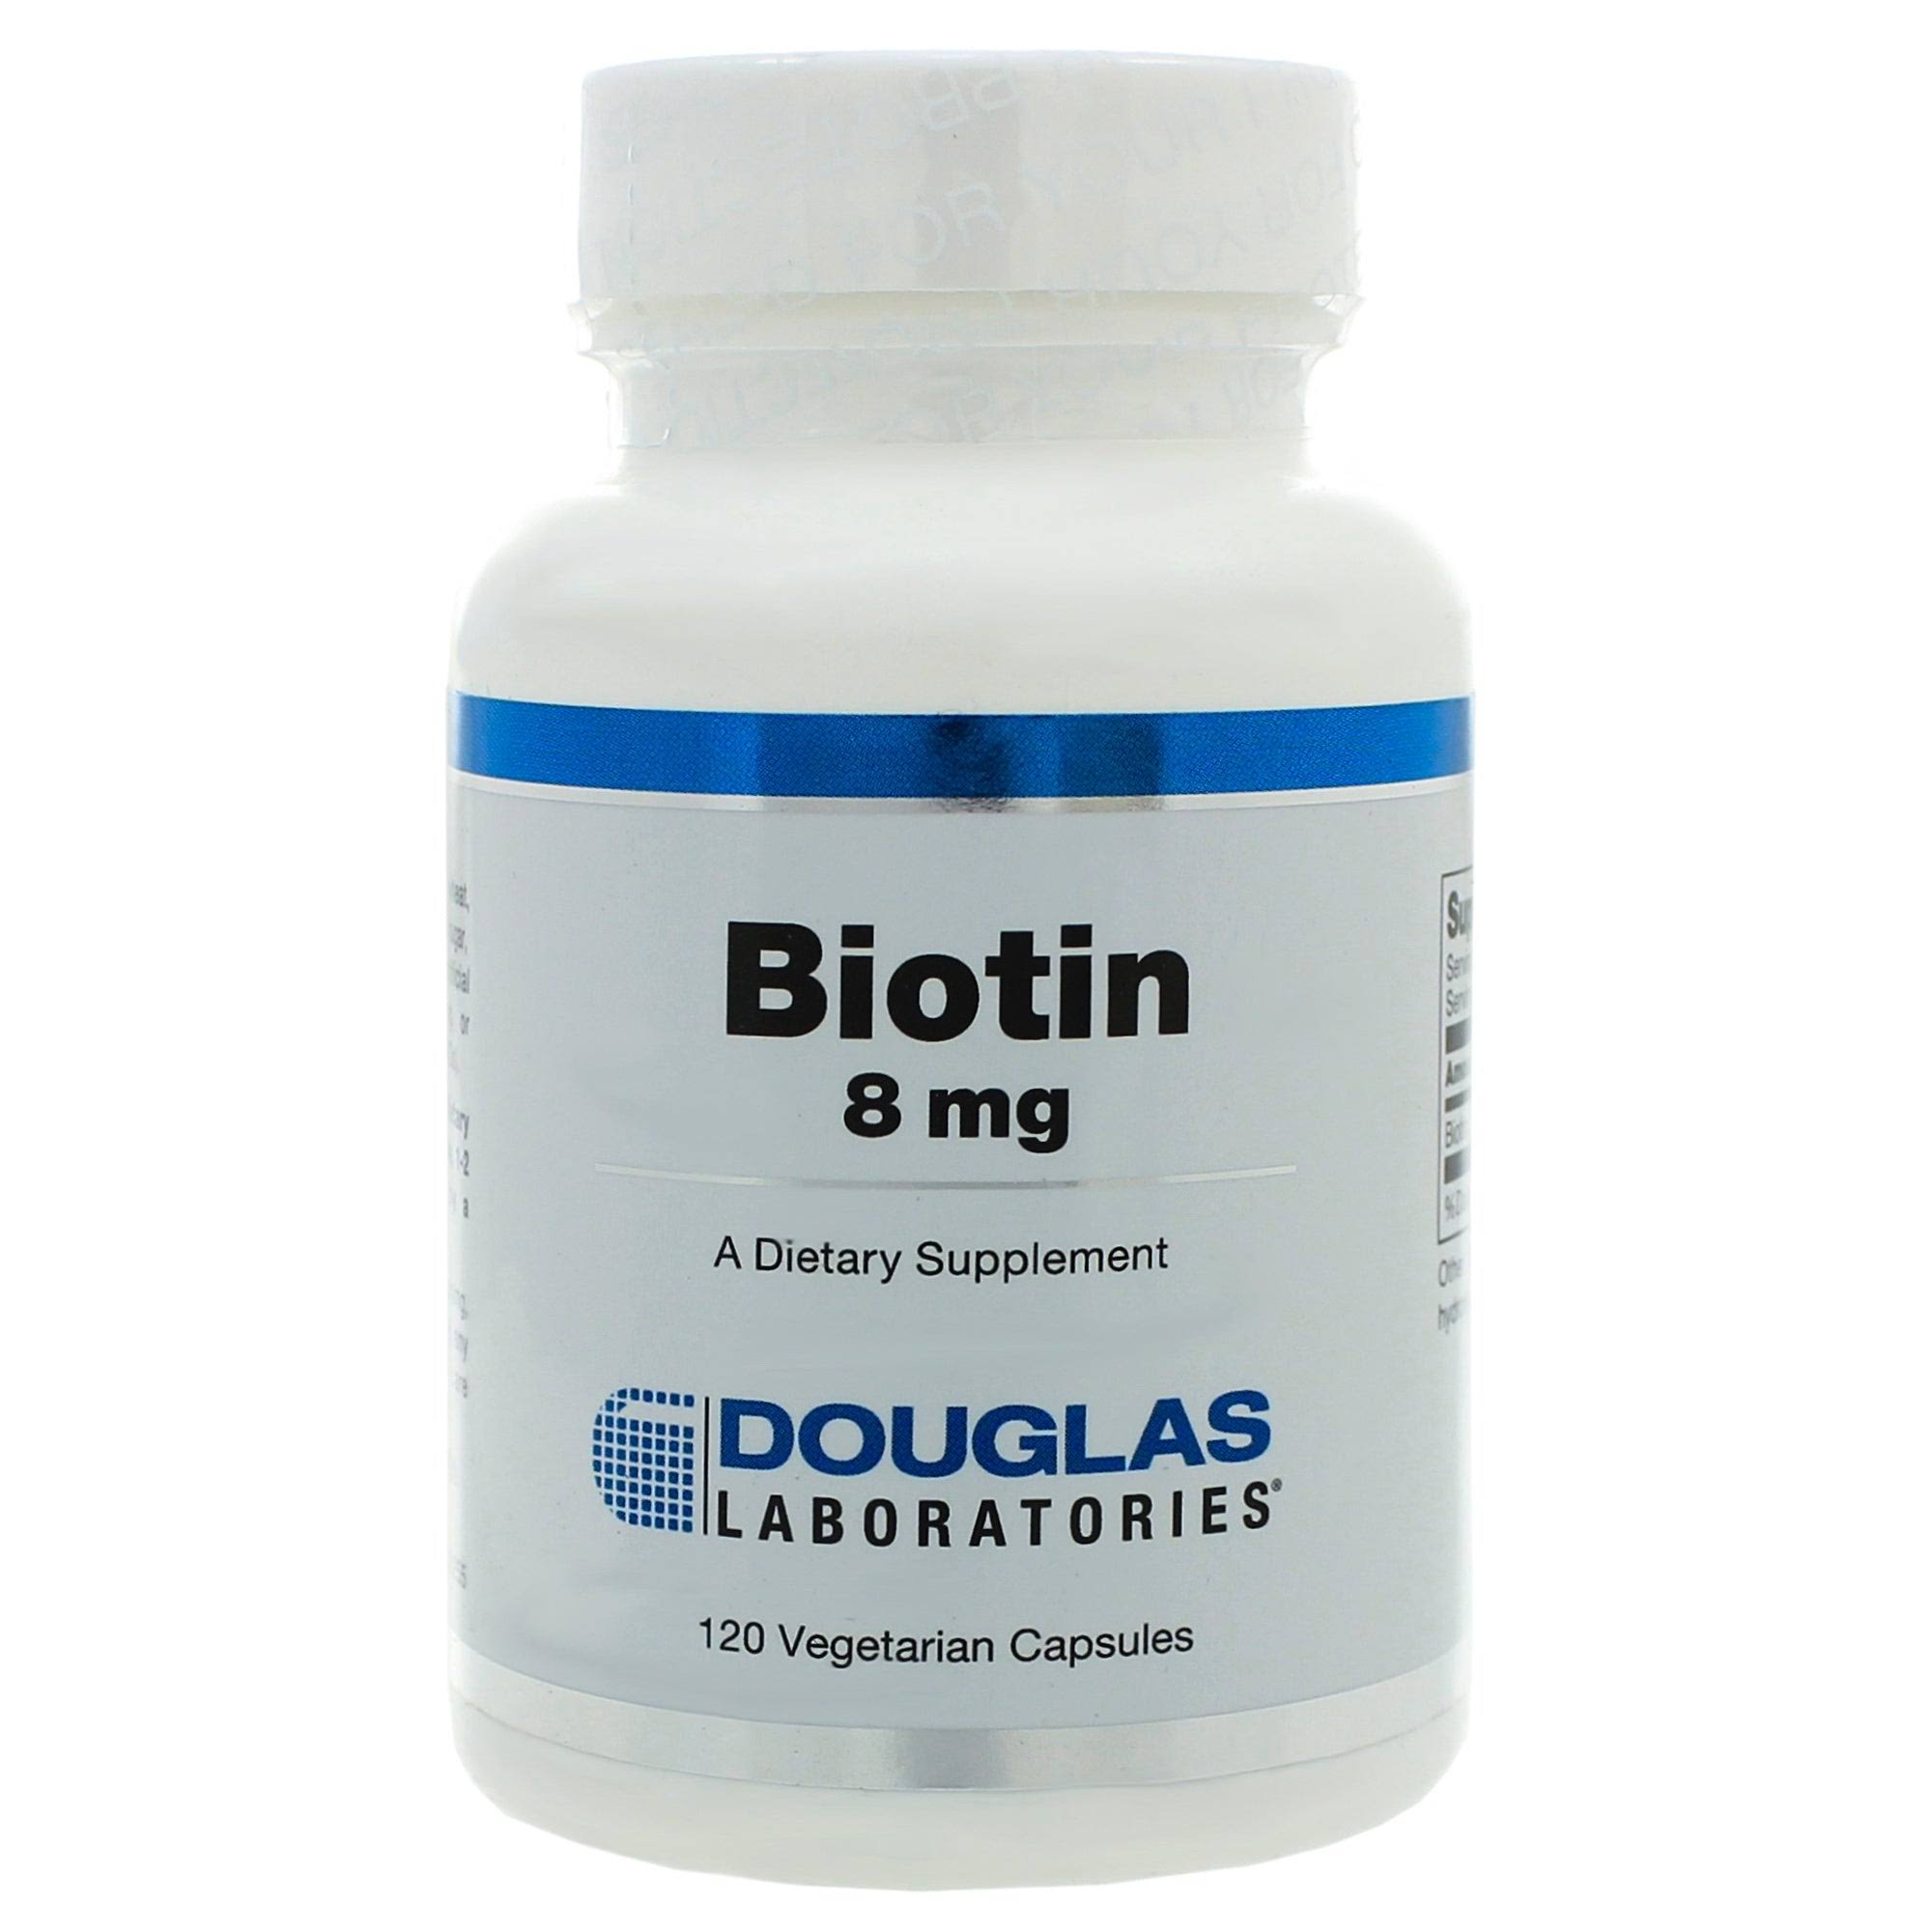 Douglas Laboratories - Biotin 8 mg - 120 Vegetarian Capsules